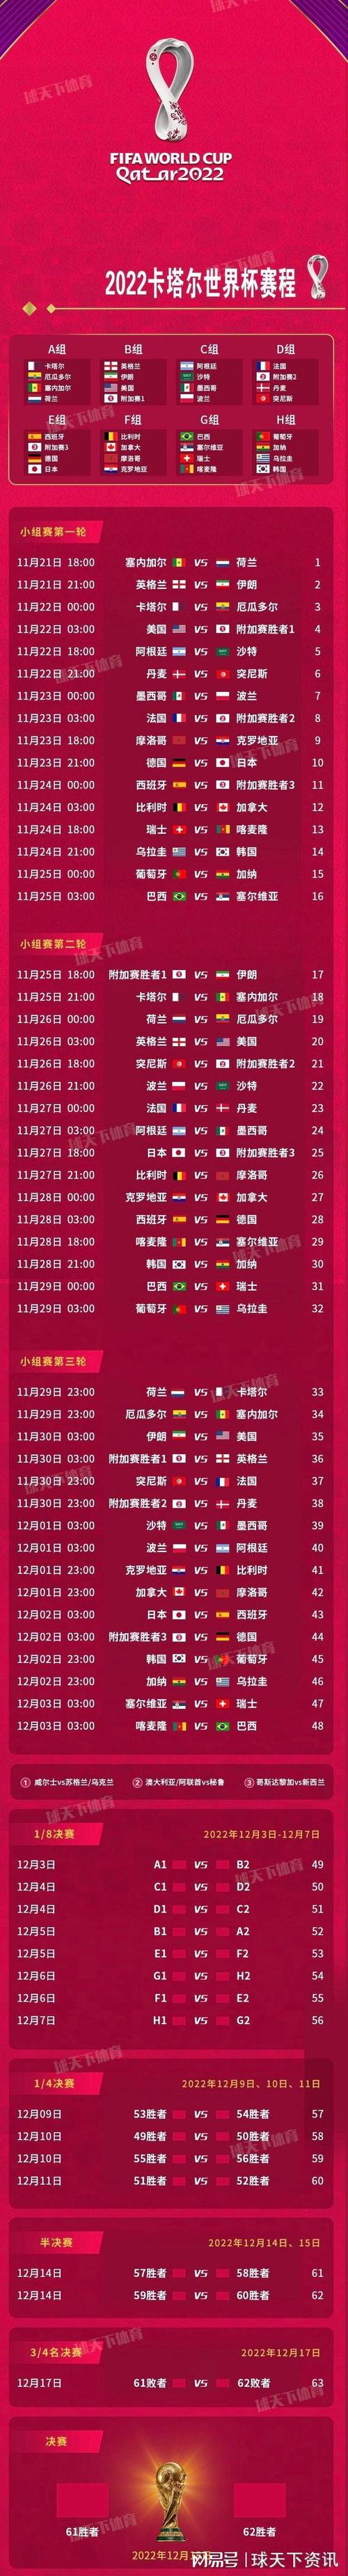 卡塔尔足球世界杯比赛直播_卡塔尔足球世界杯比赛时间表